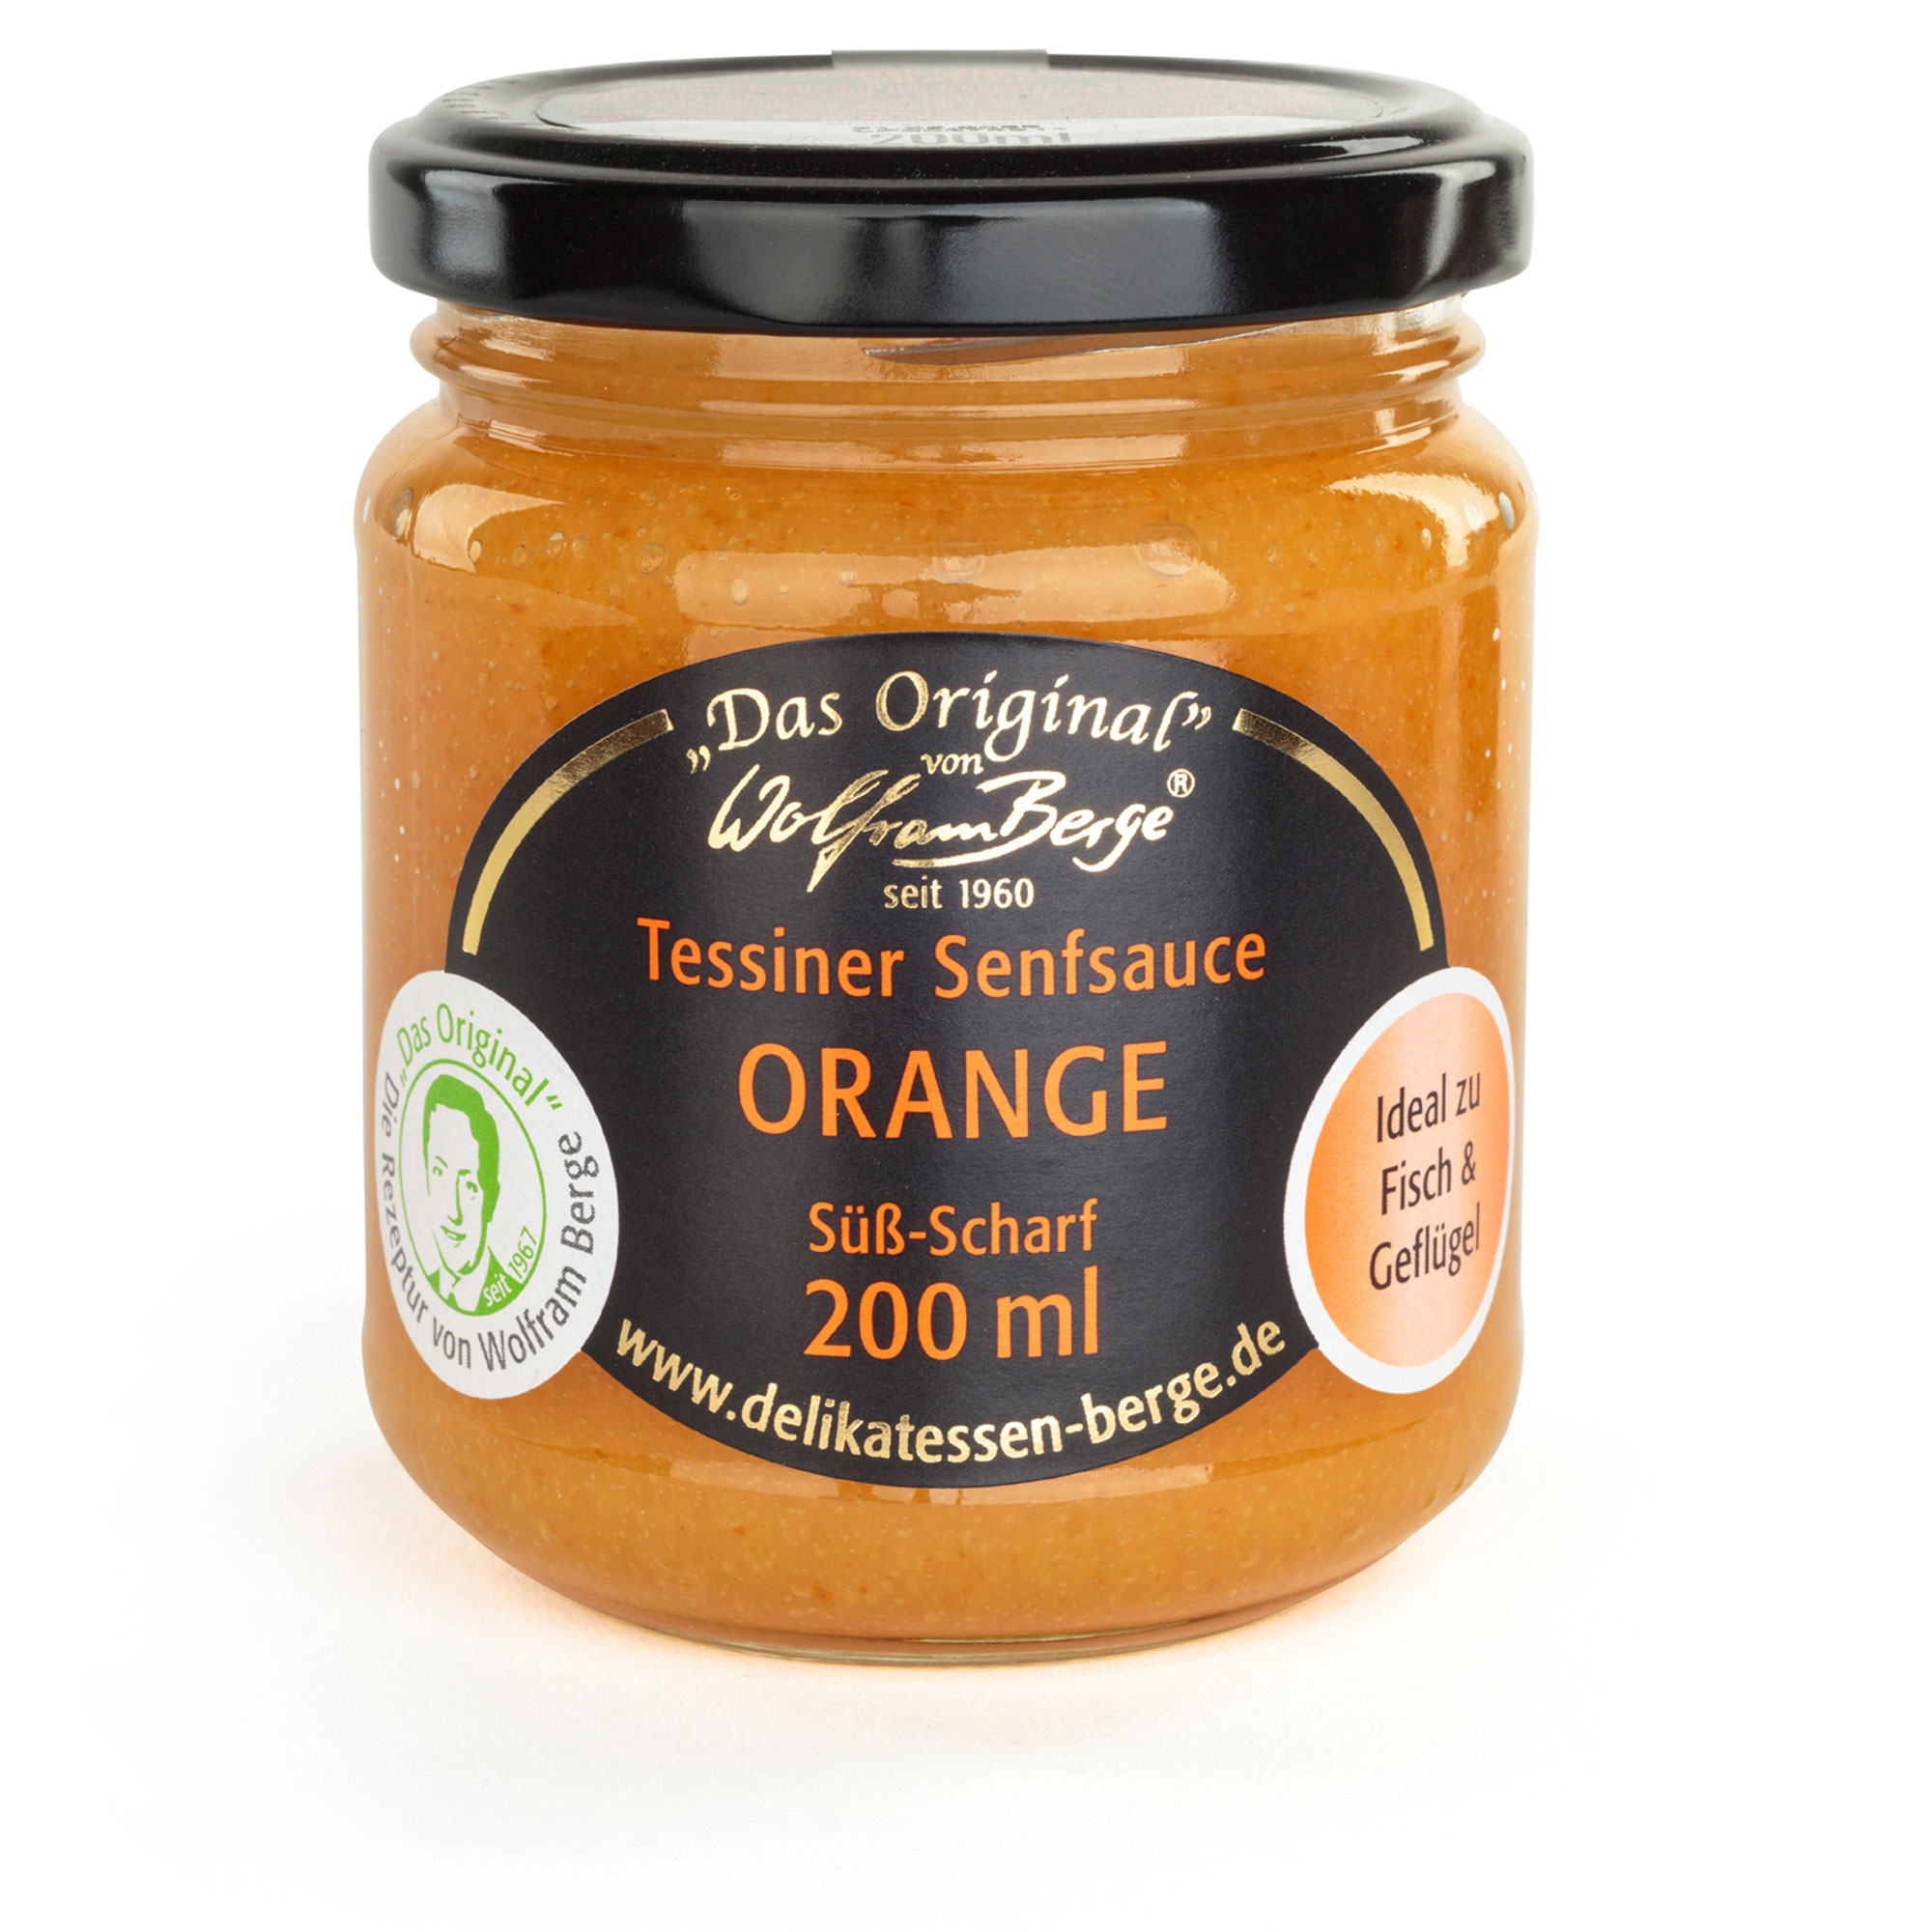 Original Tessiner Senfsauce Orange